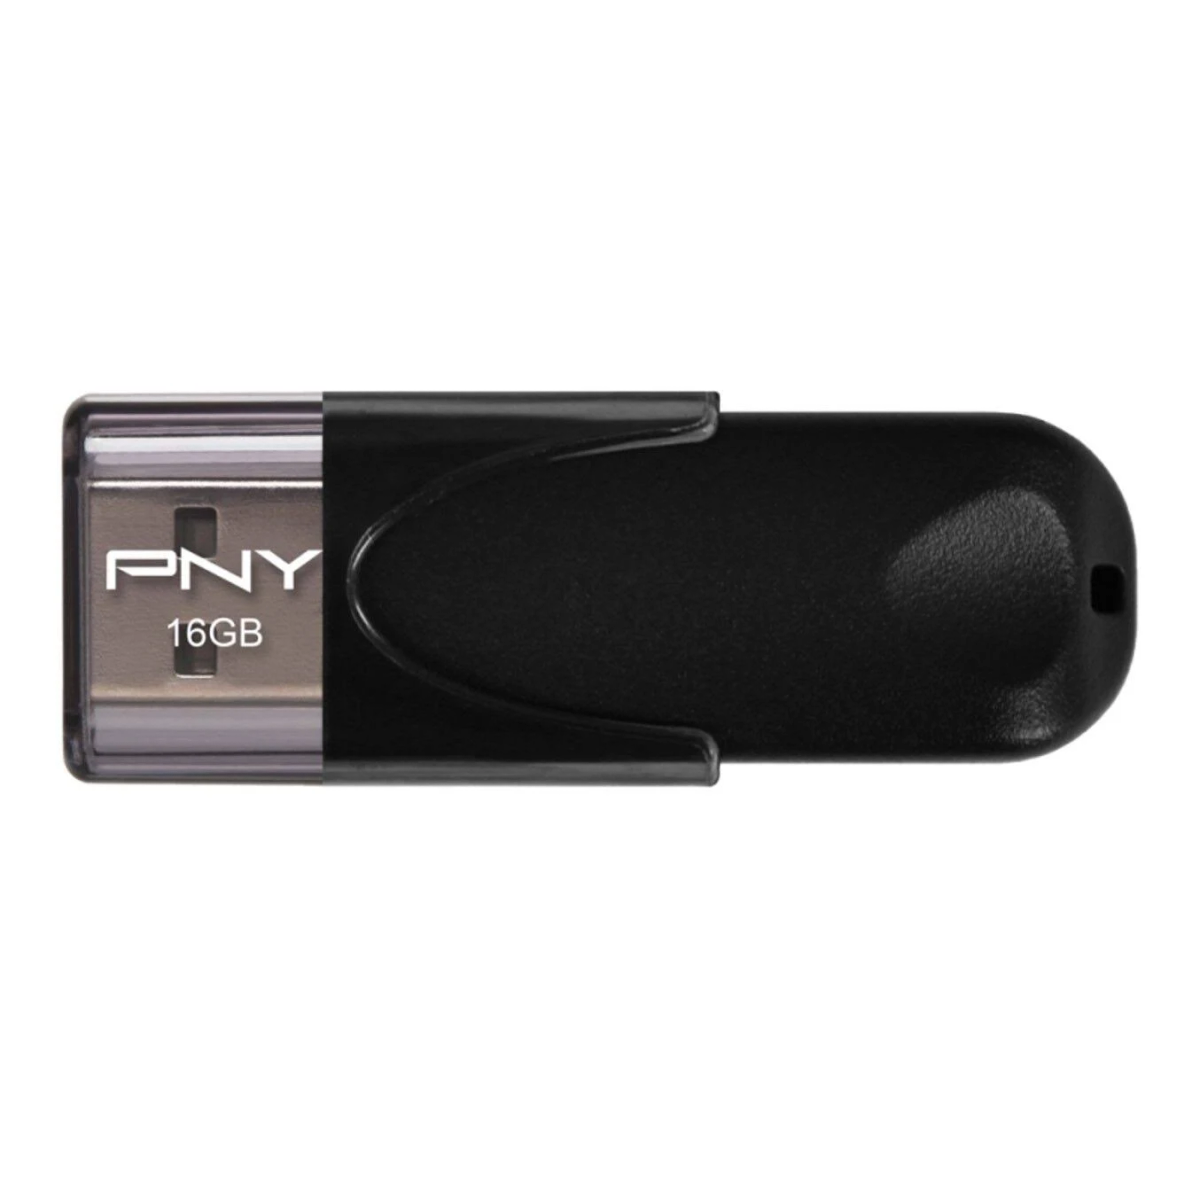 GB) STICK PNY 16GB Attaché USB-Flash-Laufwerk (Schwarz, 4 2.0 16 PNY